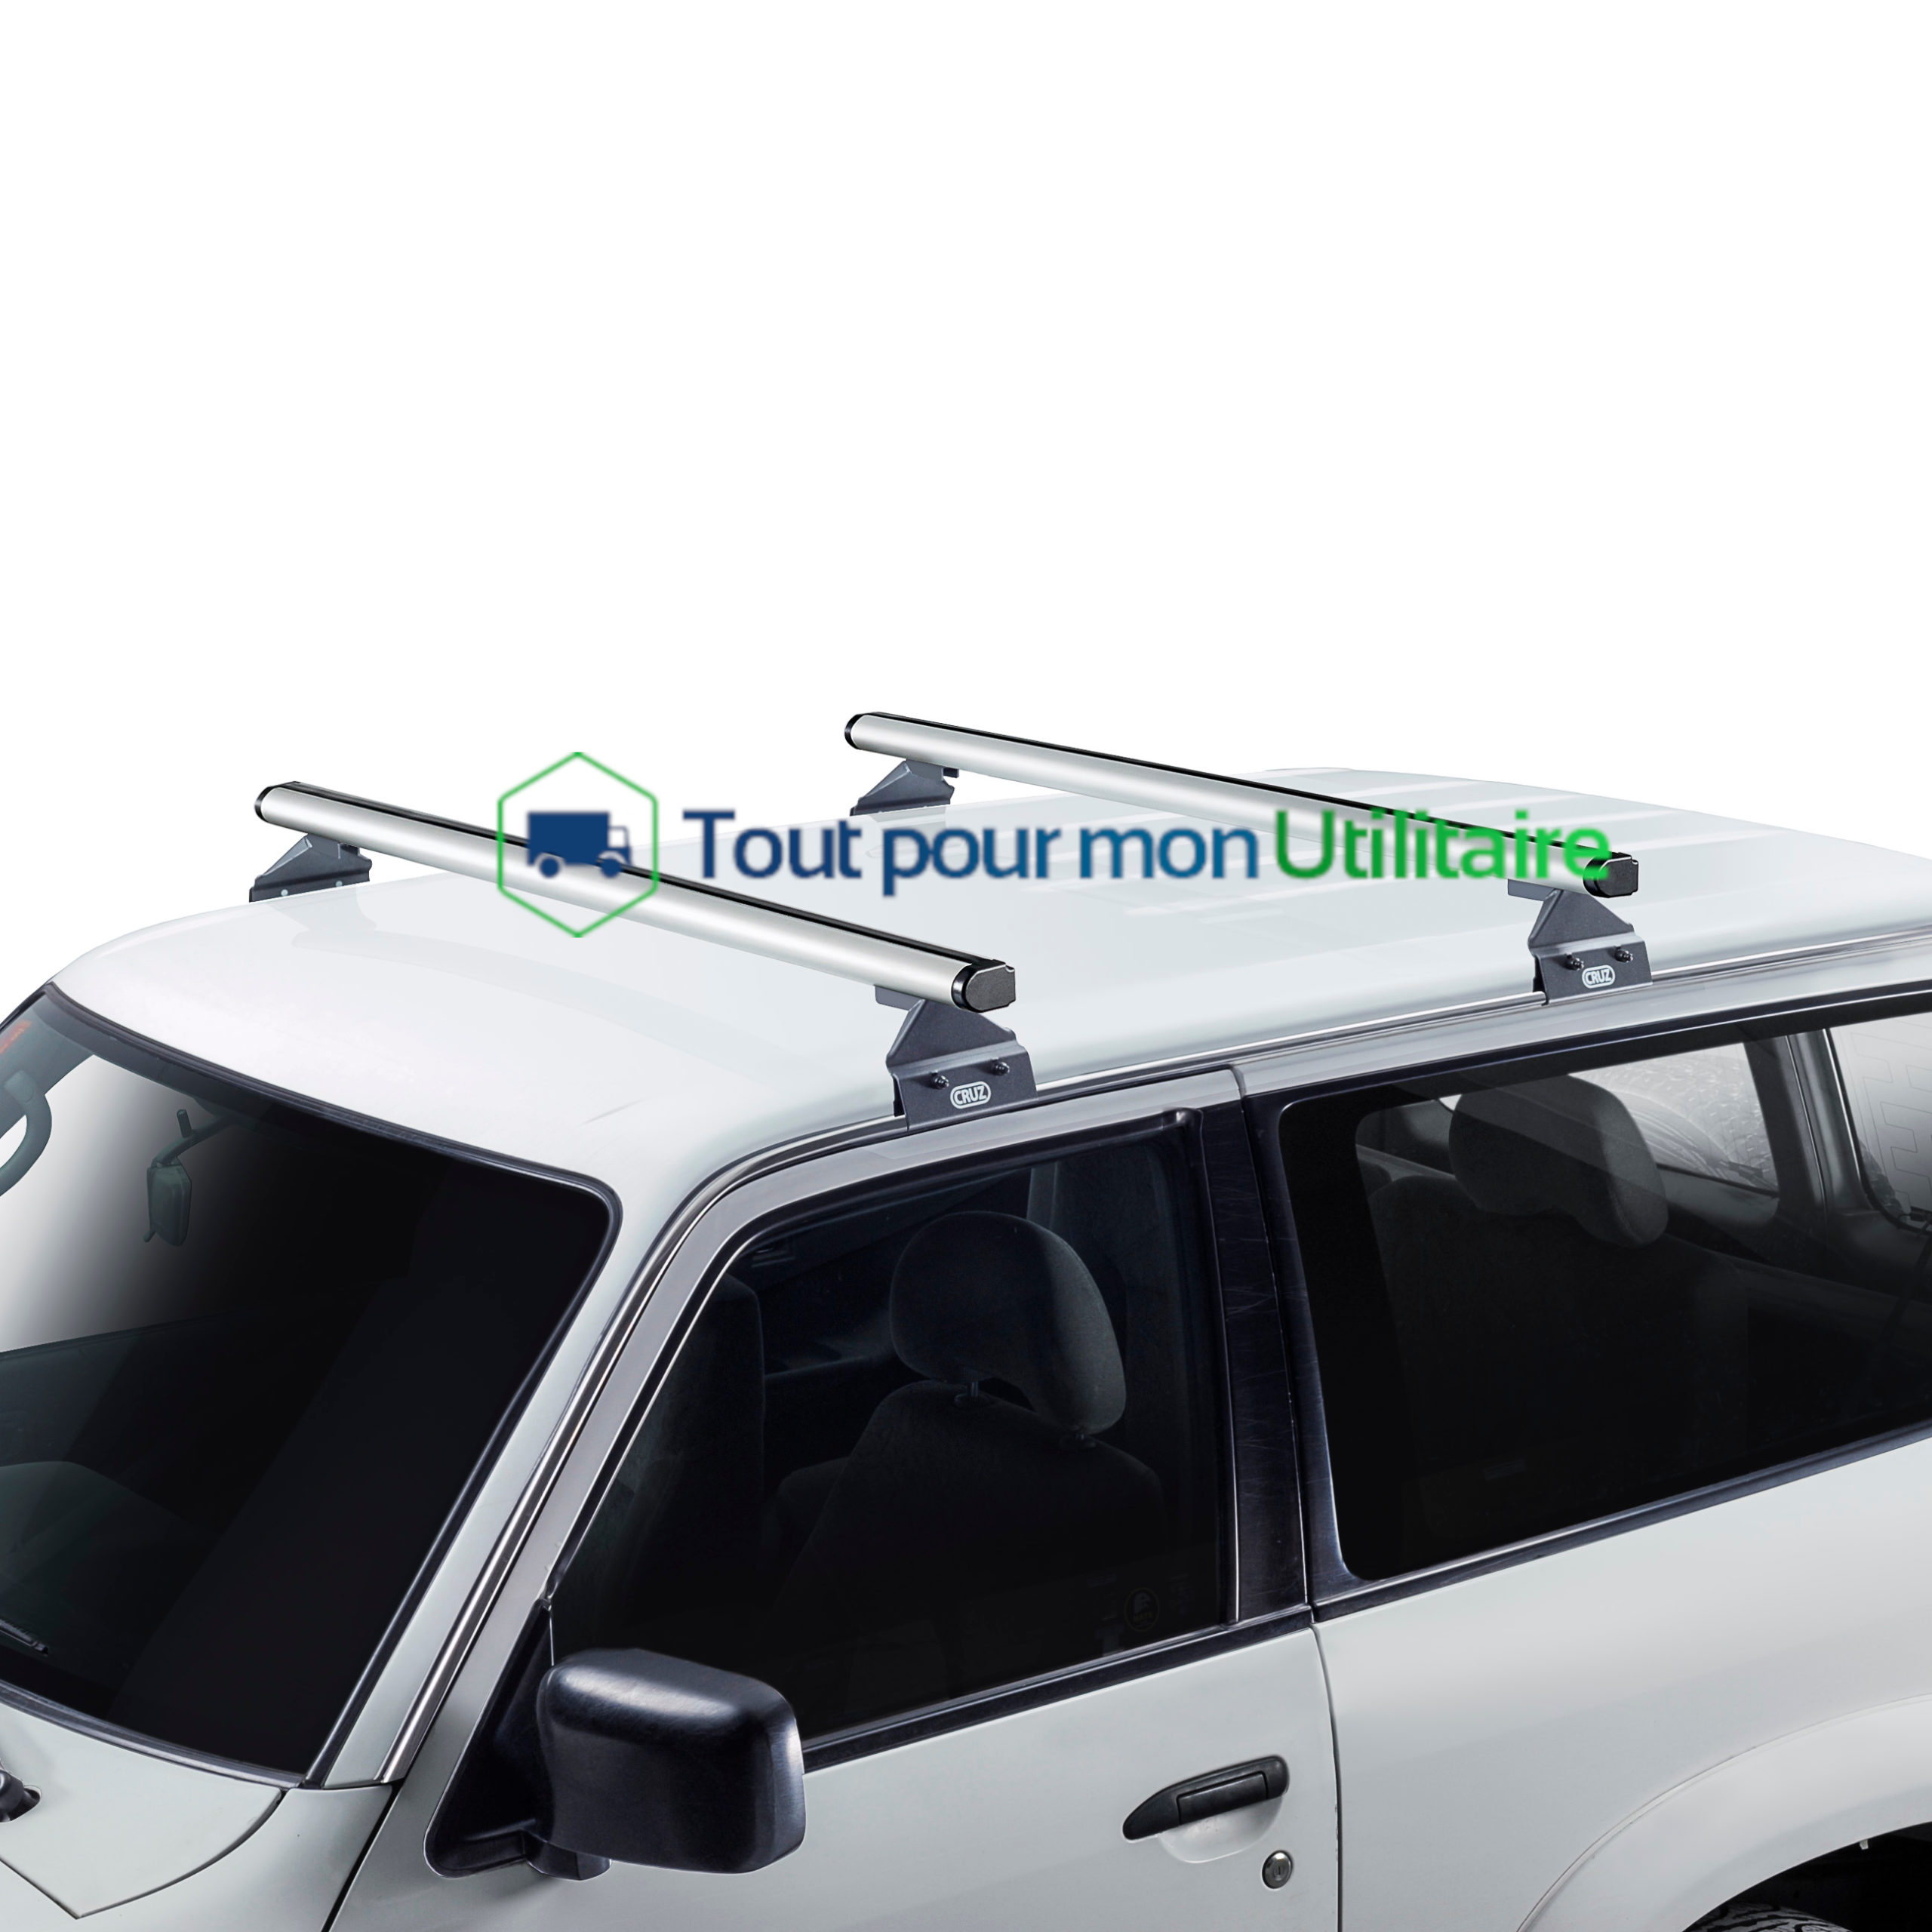 https://www.tout-pour-mon-utilitaire.fr/wp-content/uploads/2022/07/amenagement-utilitaire-barres-de-toit-Volkswagen-transporter-t5-t6-chargement-aluminium-monter-scaled.jpg